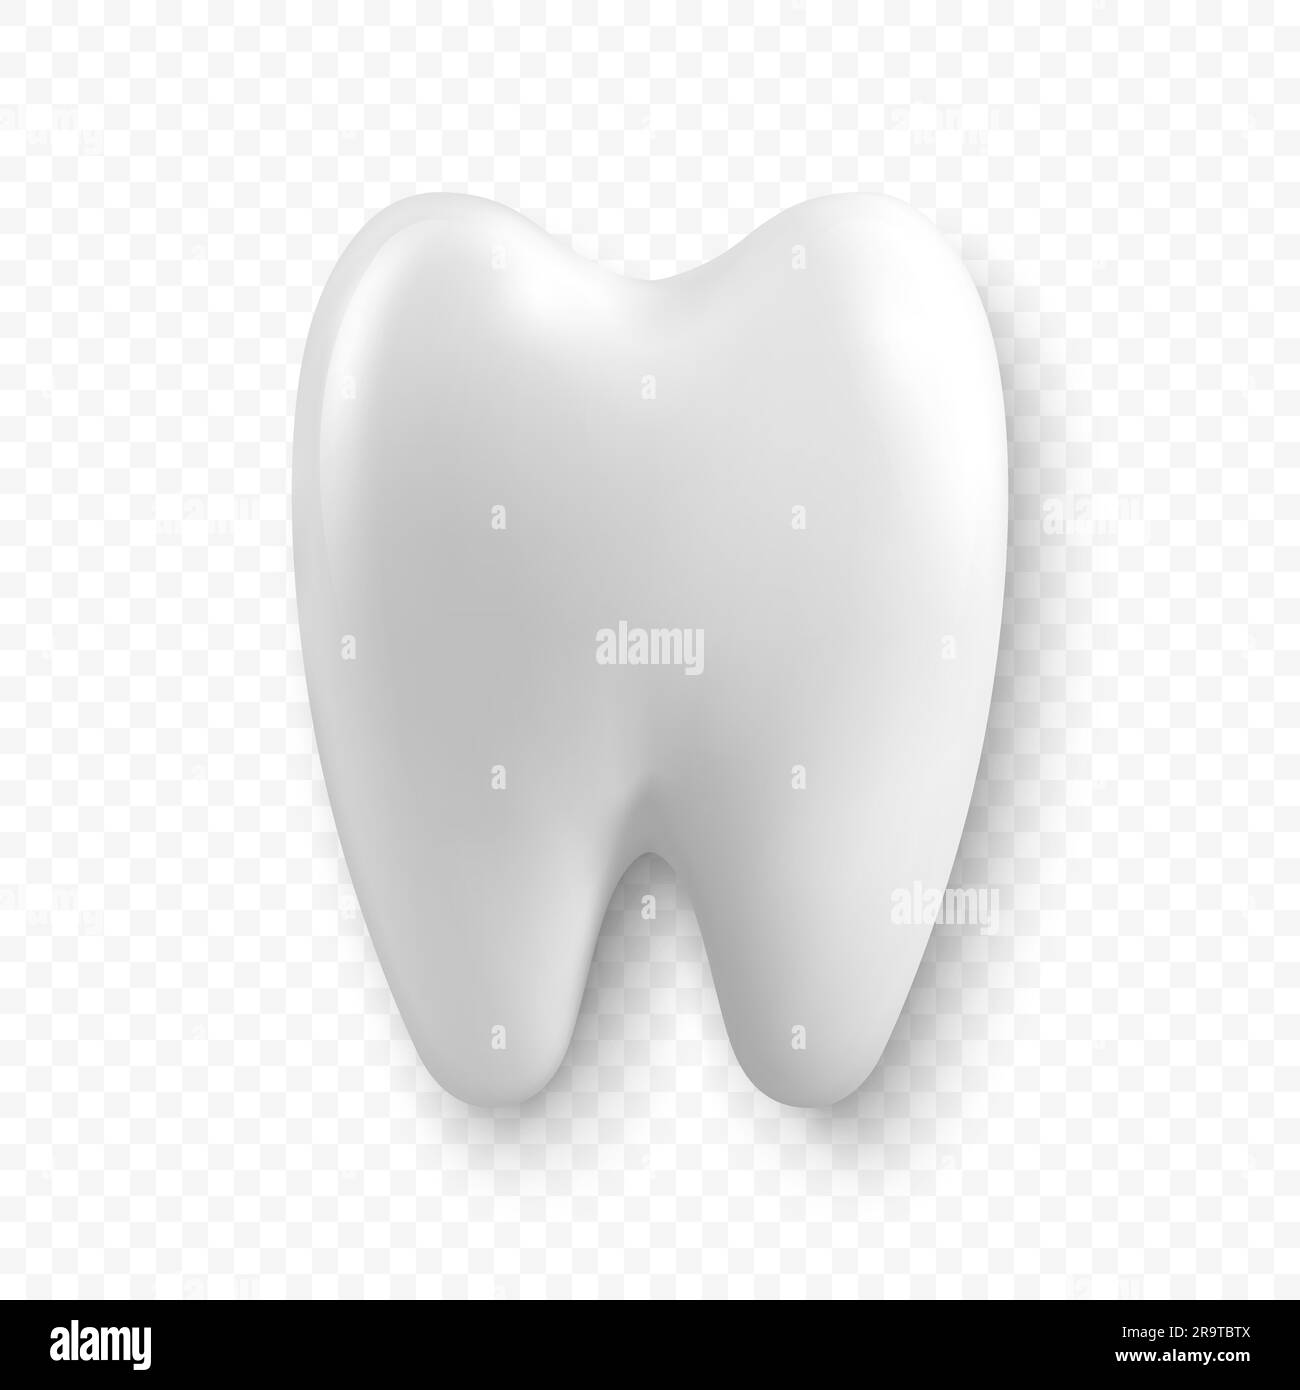 Vektor 3D realistischer Zahn. Zahnärztliche Inspektionsbanner, Plackard. Zahnsymbol Nahaufnahme Isoliert. Draufsicht, Vorderansicht. Medical, Dentist Design Template. Zahnärztlich Stock Vektor